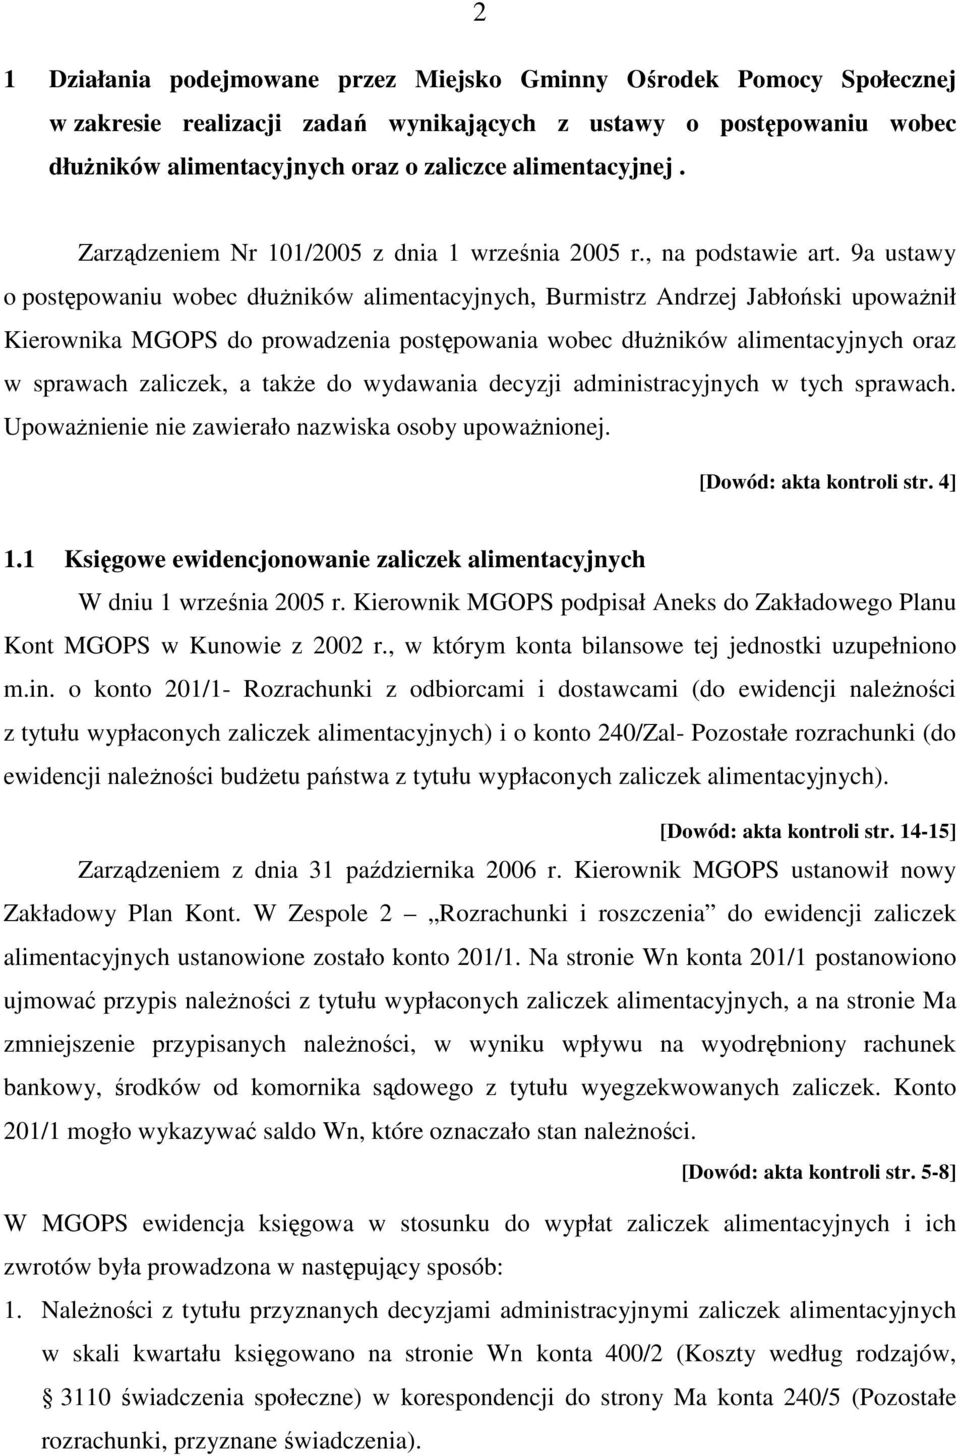 9a ustawy o postępowaniu wobec dłuŝników alimentacyjnych, Burmistrz Andrzej Jabłoński upowaŝnił Kierownika MGOPS do prowadzenia postępowania wobec dłuŝników alimentacyjnych oraz w sprawach zaliczek,